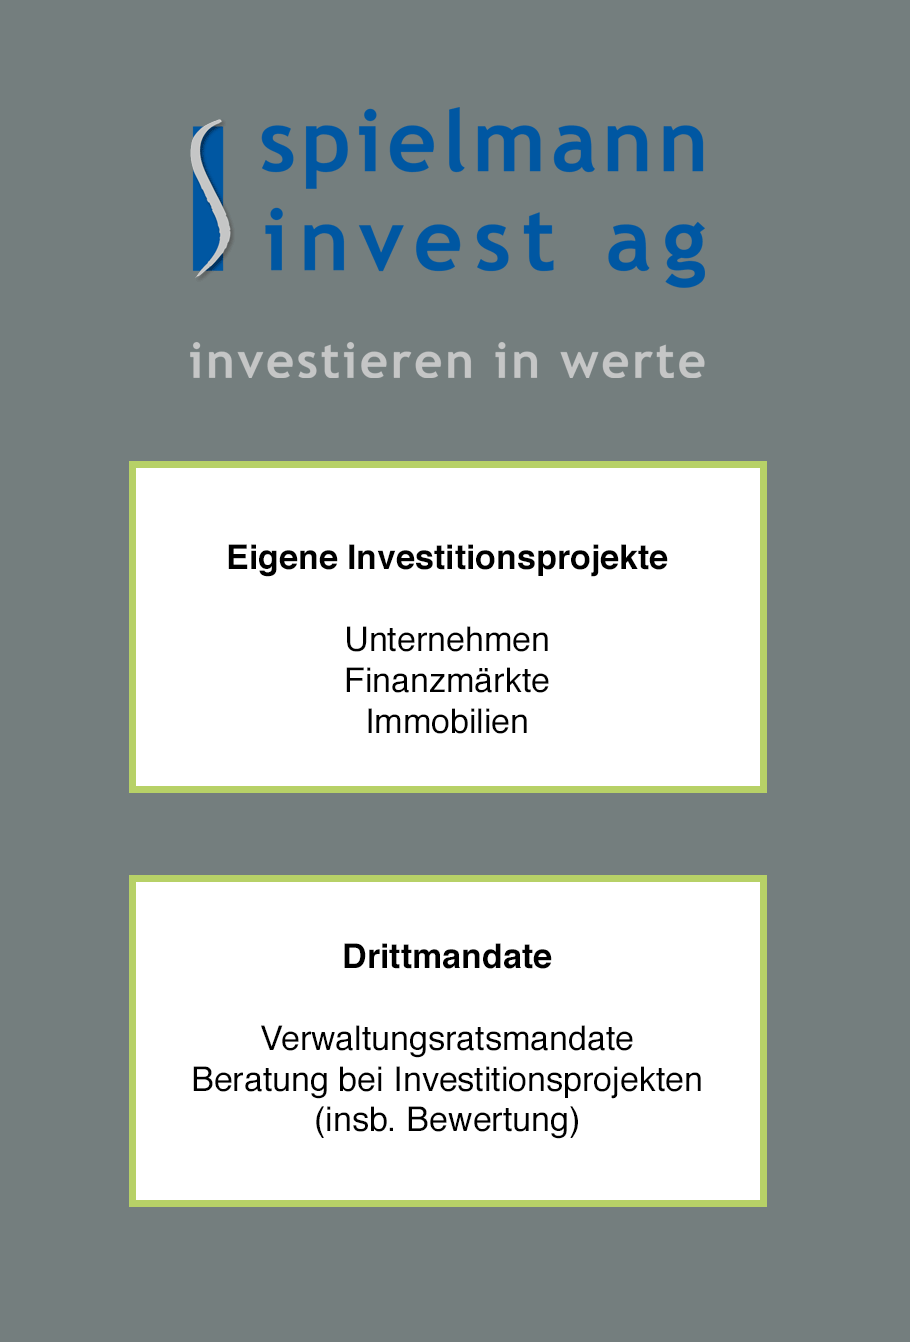 Spielmann Invest AG